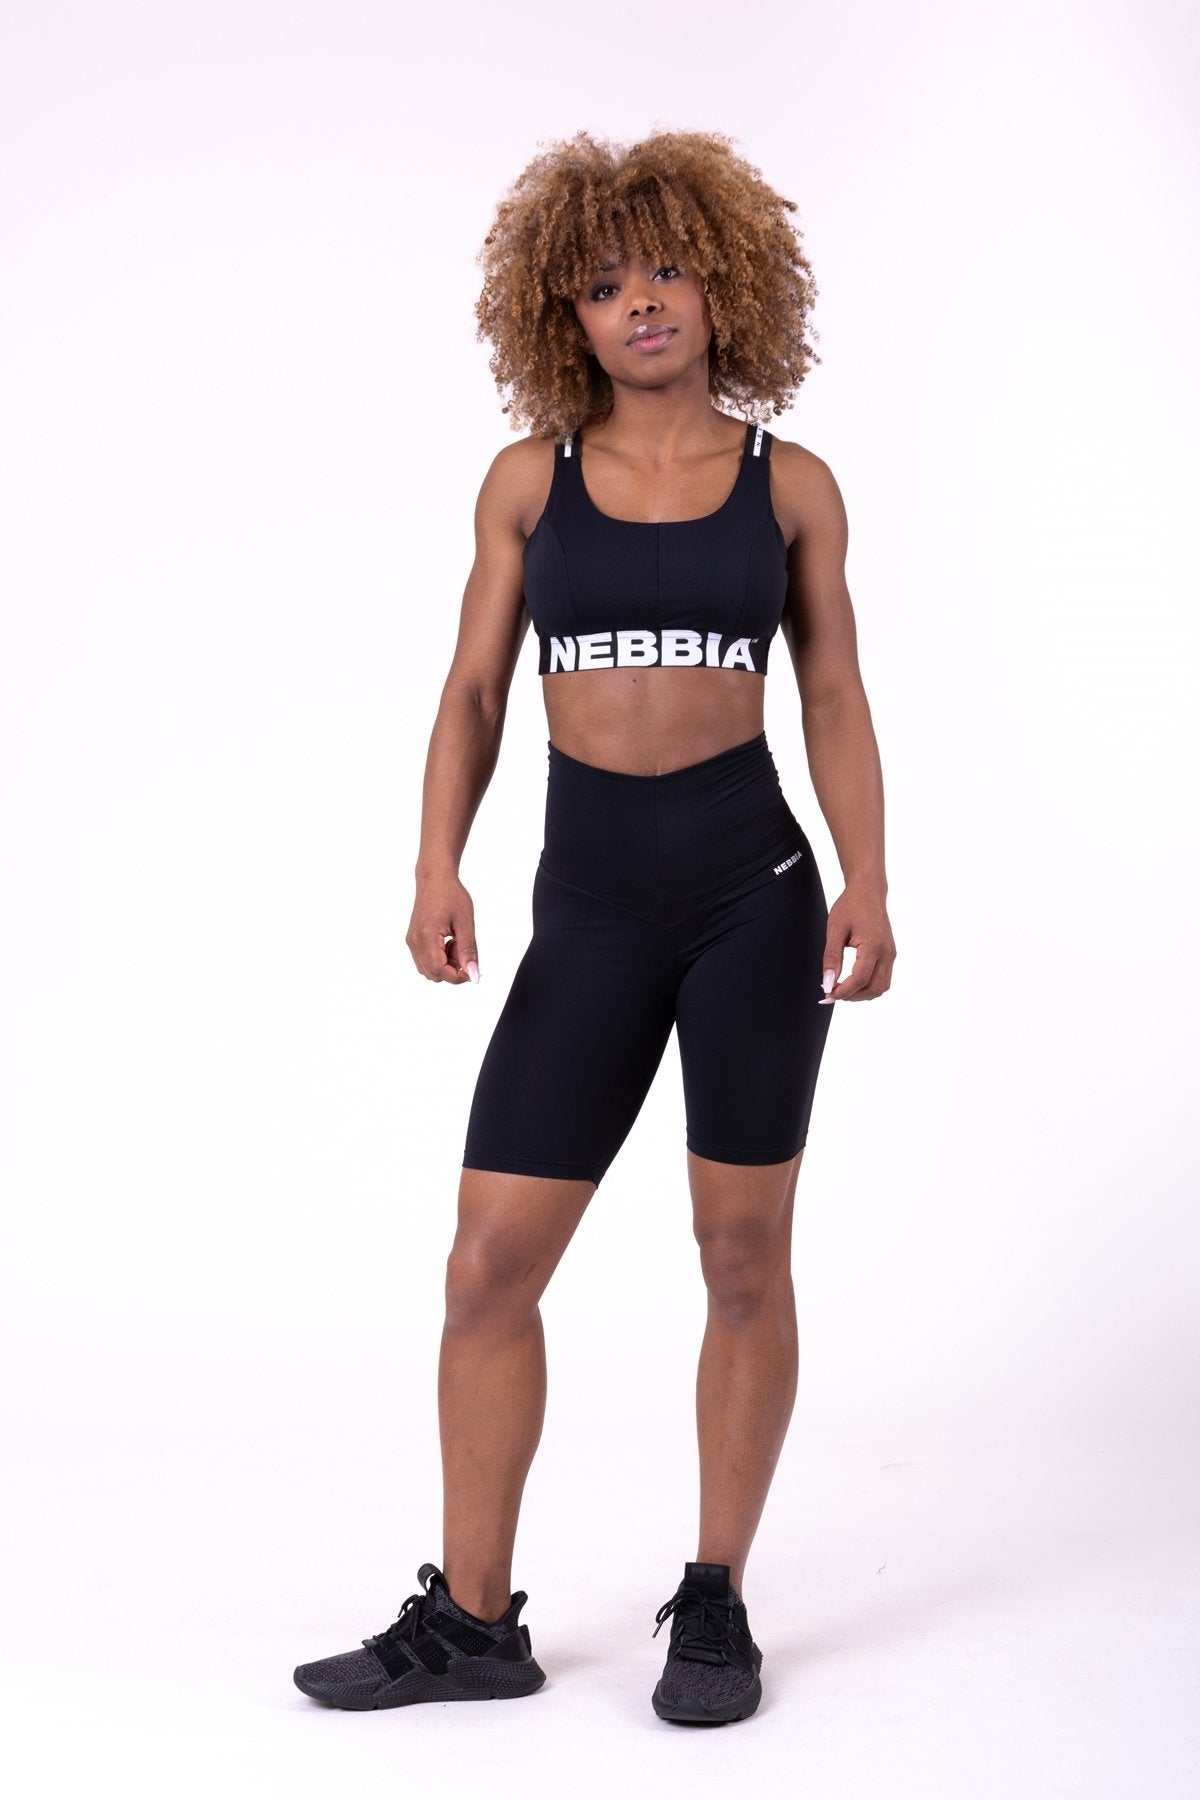 Nebbia Airy Straps Sports Bra 693 - Black - Urban Gym Wear